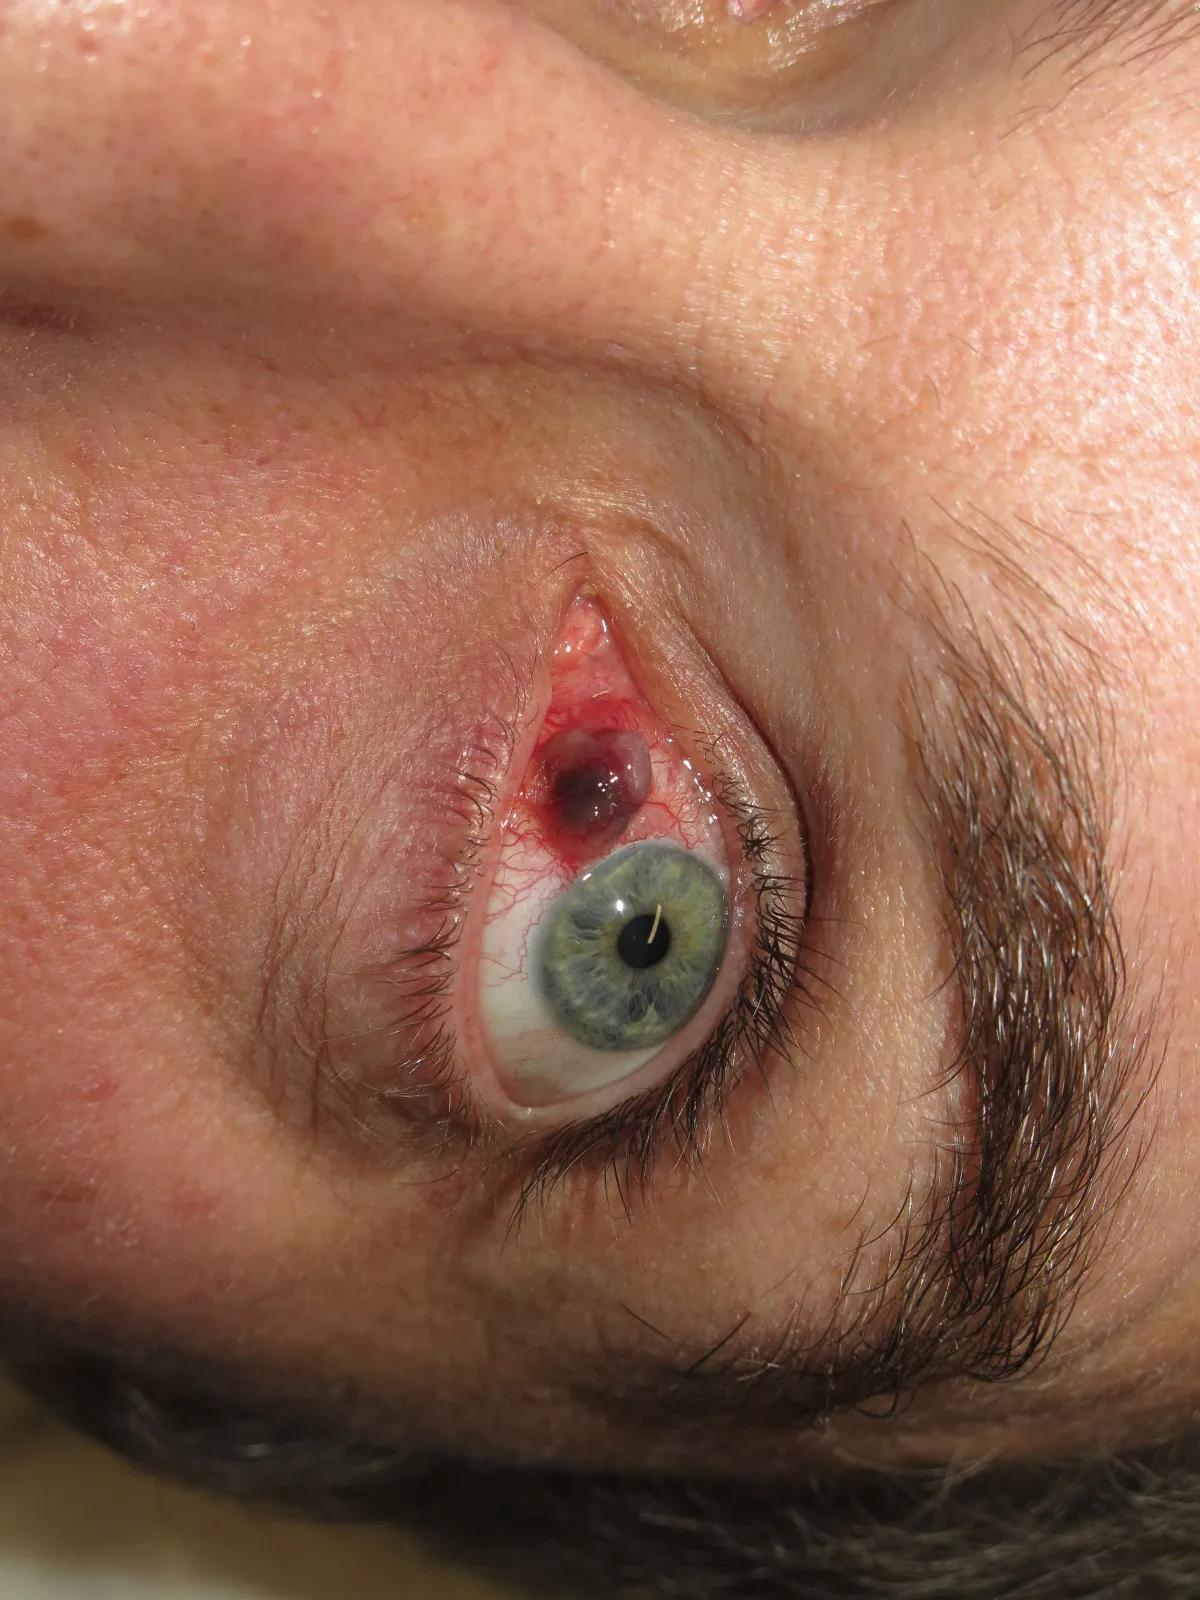 Modermærkekræft i slimhinden på øjets forside